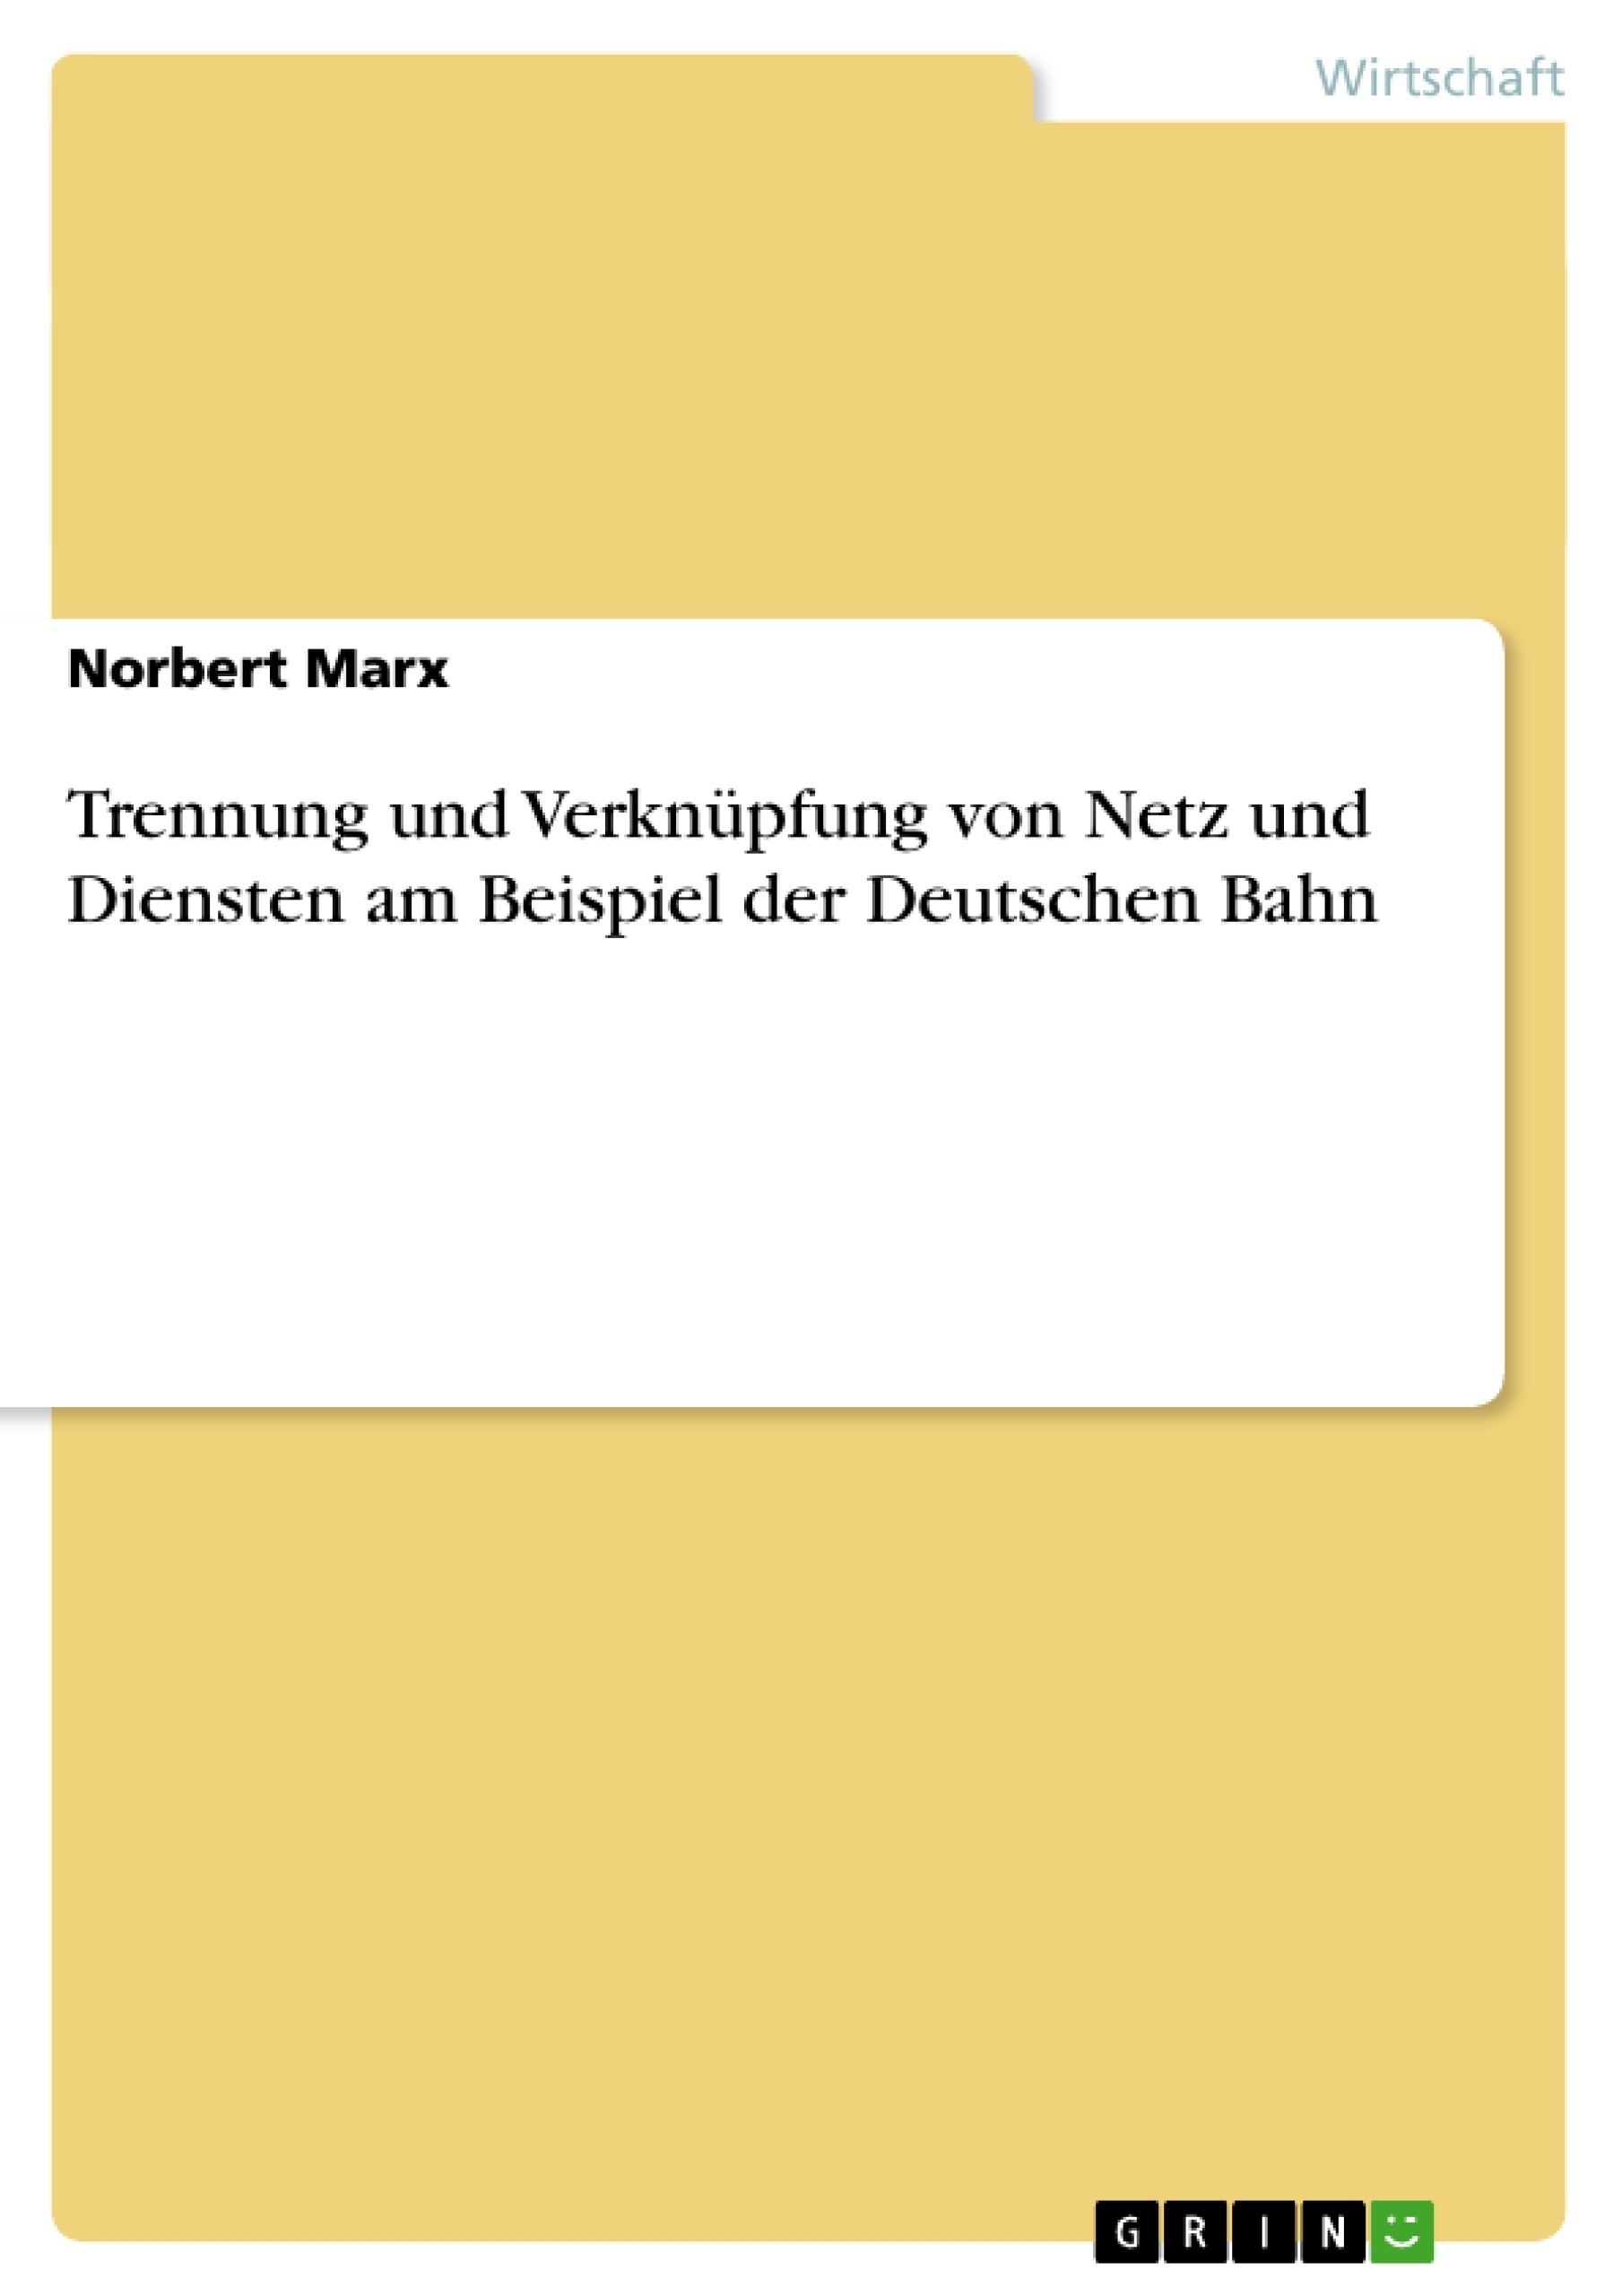 Title: Trennung und Verknüpfung von Netz und Diensten am Beispiel der Deutschen Bahn